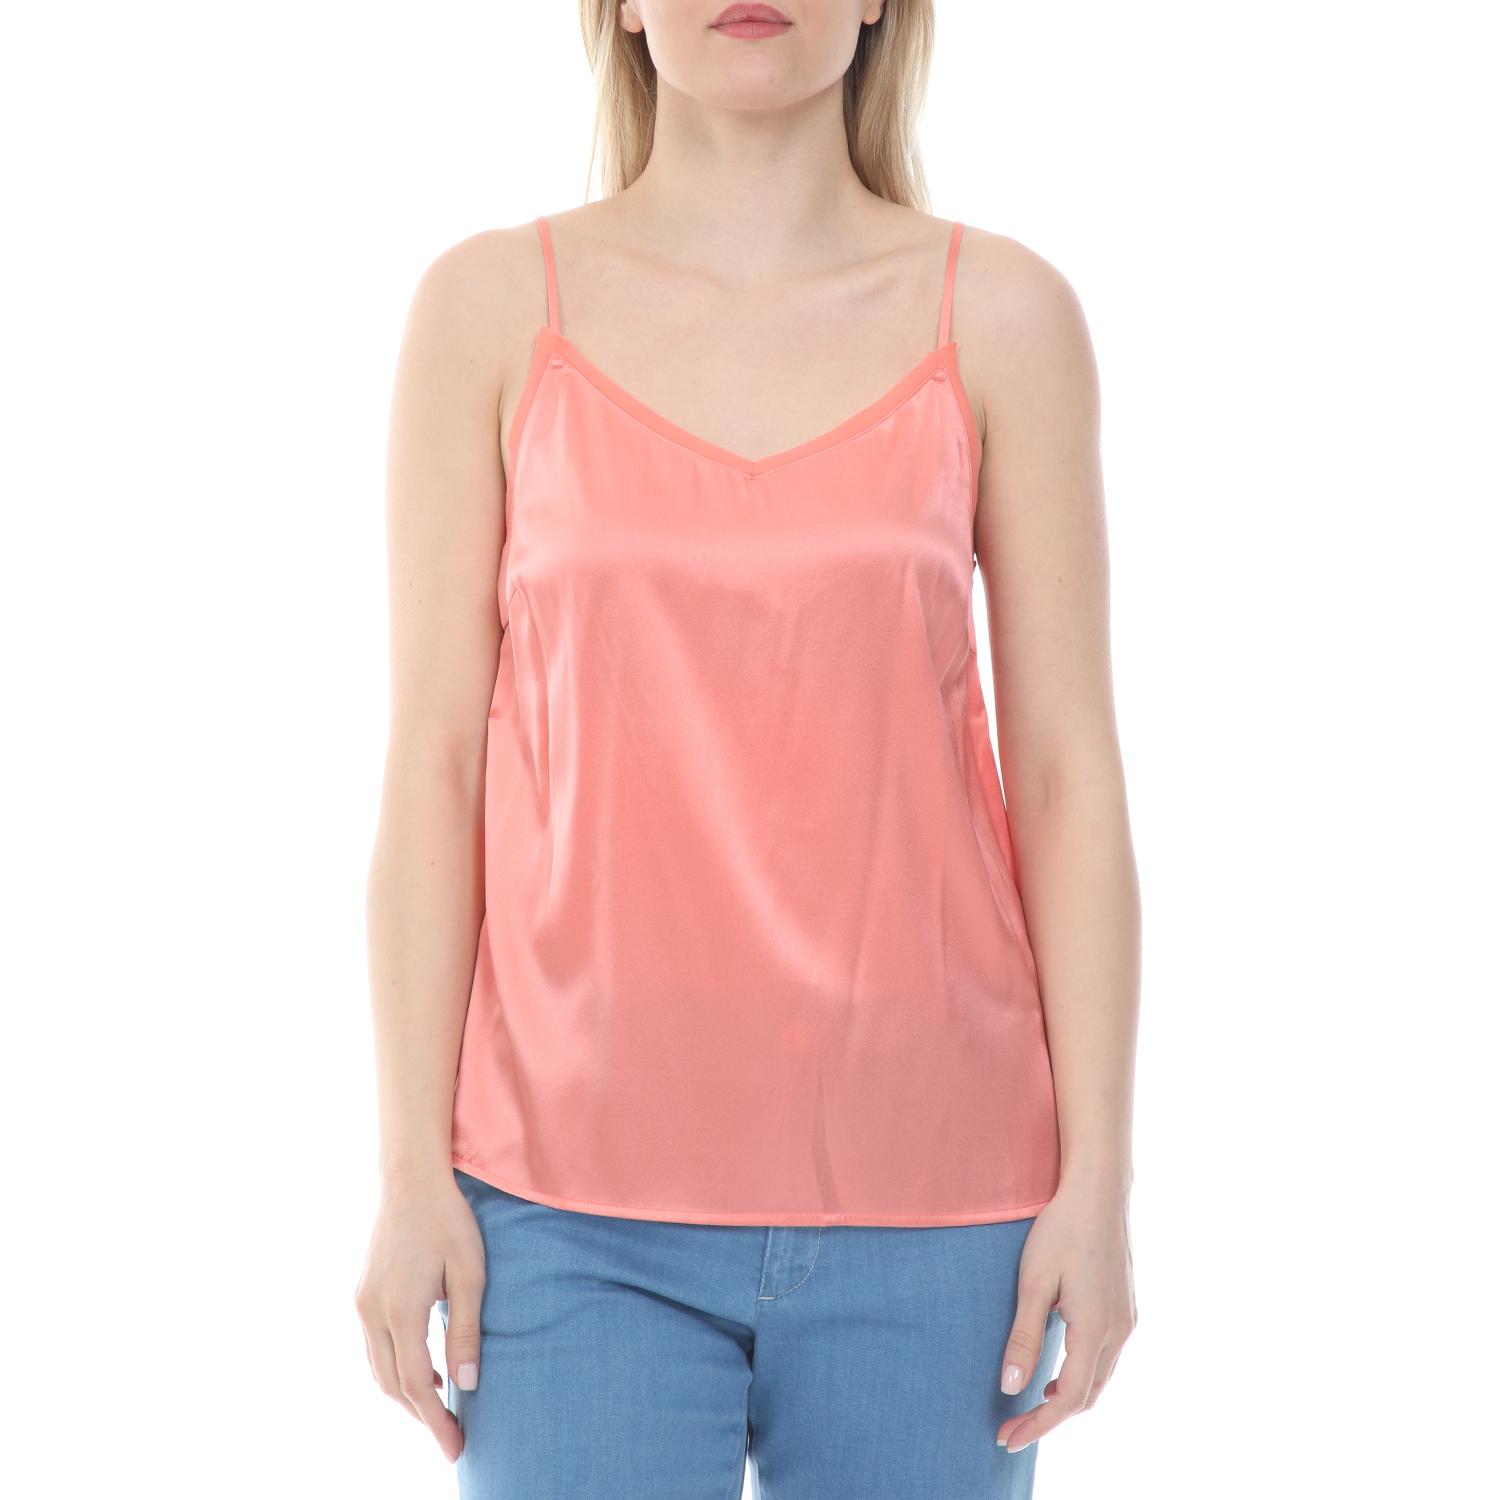 Γυναικεία/Ρούχα/Μπλούζες/Τοπ MOS MOSH - Γυναικείο top lingerie MOS MOSH Ditte Silk Singlet ροζ